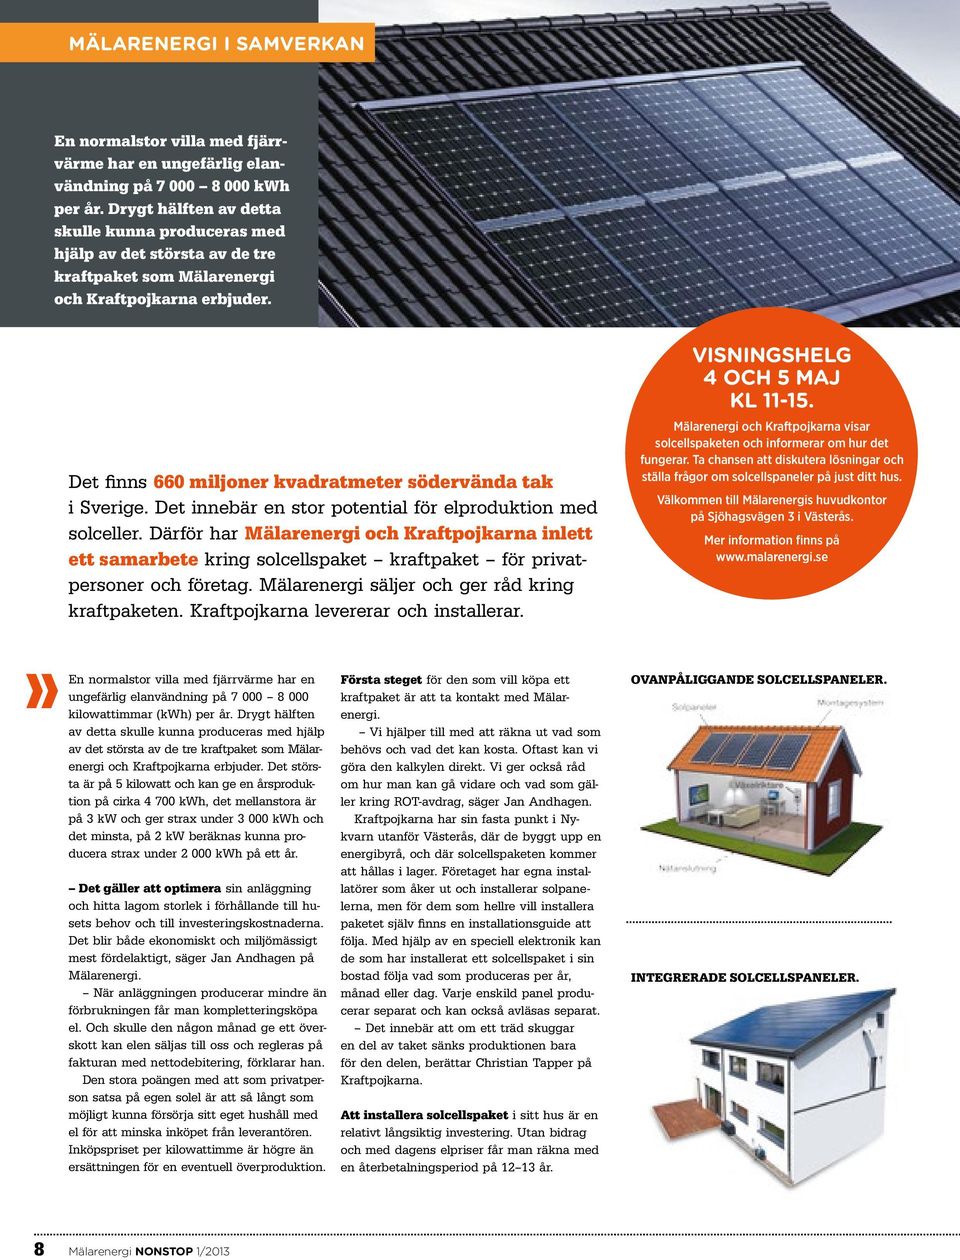 Det innebär en stor potential för elproduktion med solceller. Därför har Mälarenergi och Kraftpojkarna inlett ett samarbete kring solcells paket kraftpaket för privatpersoner och företag.